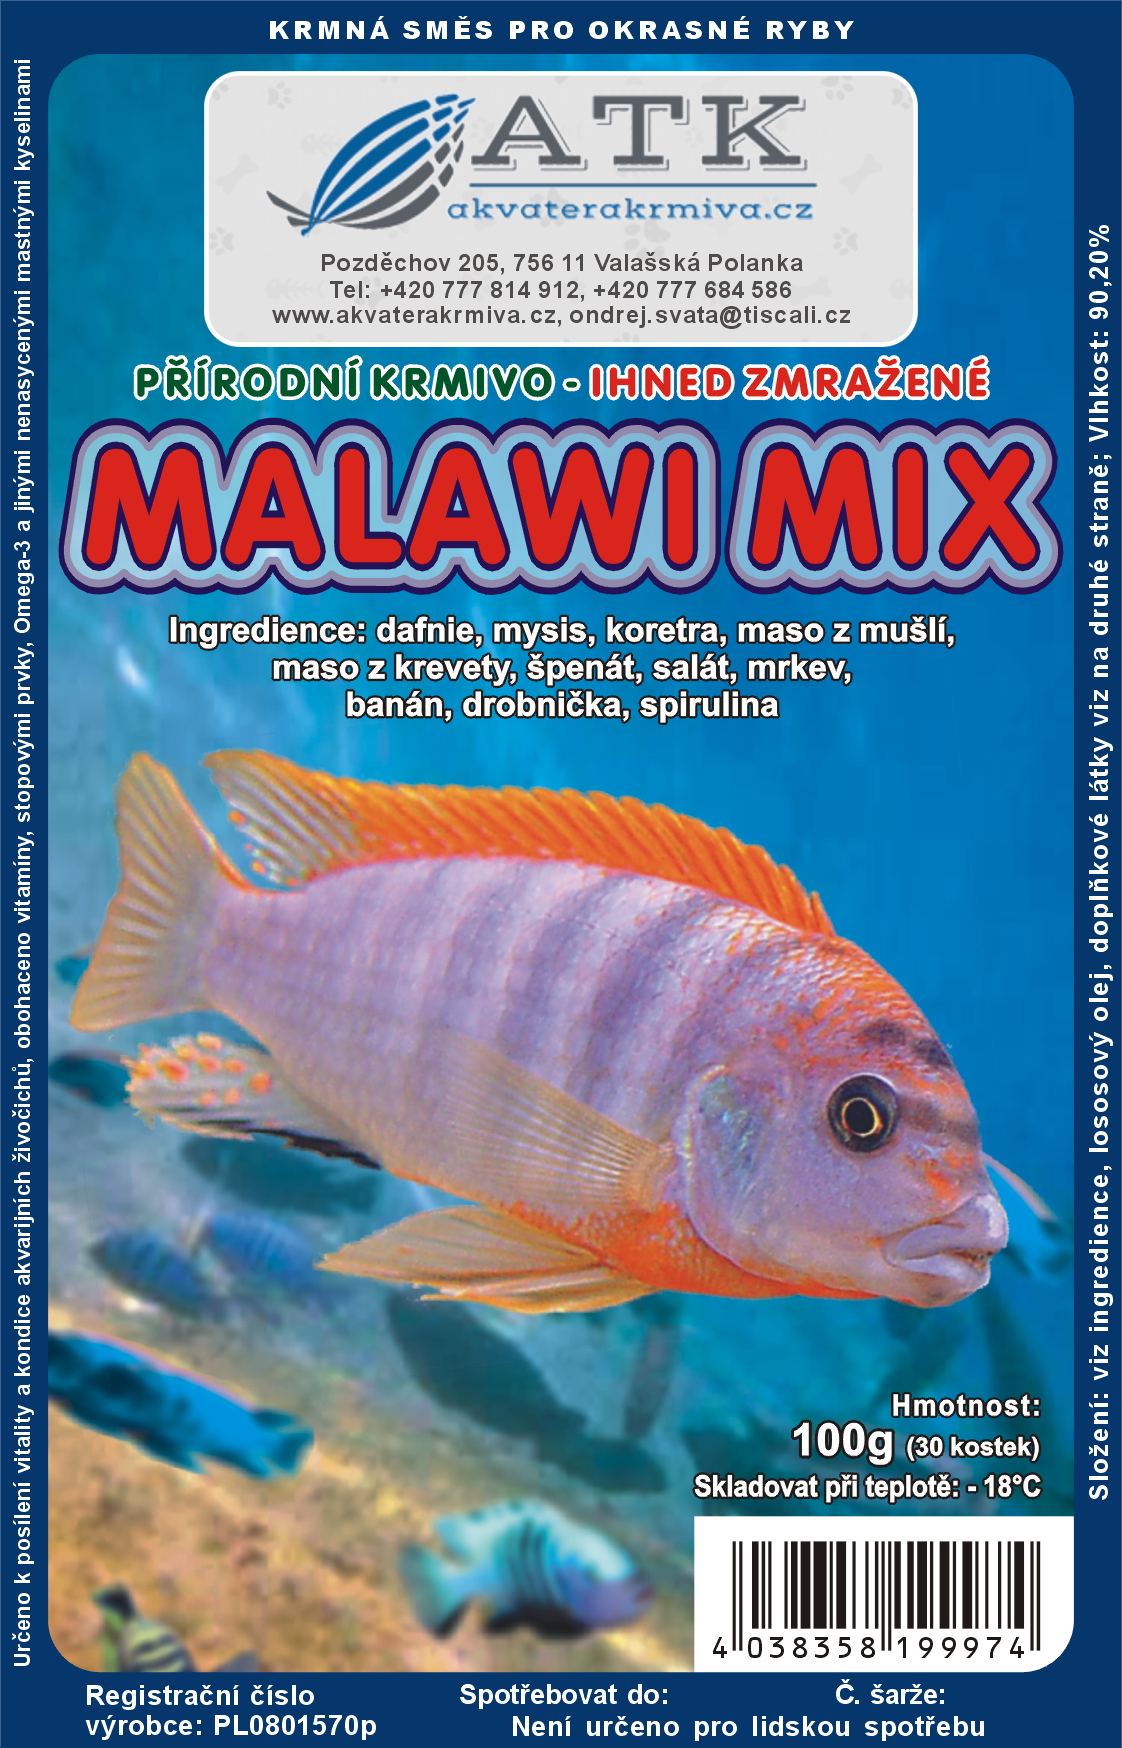 Malawi mix 100g - BLISTR